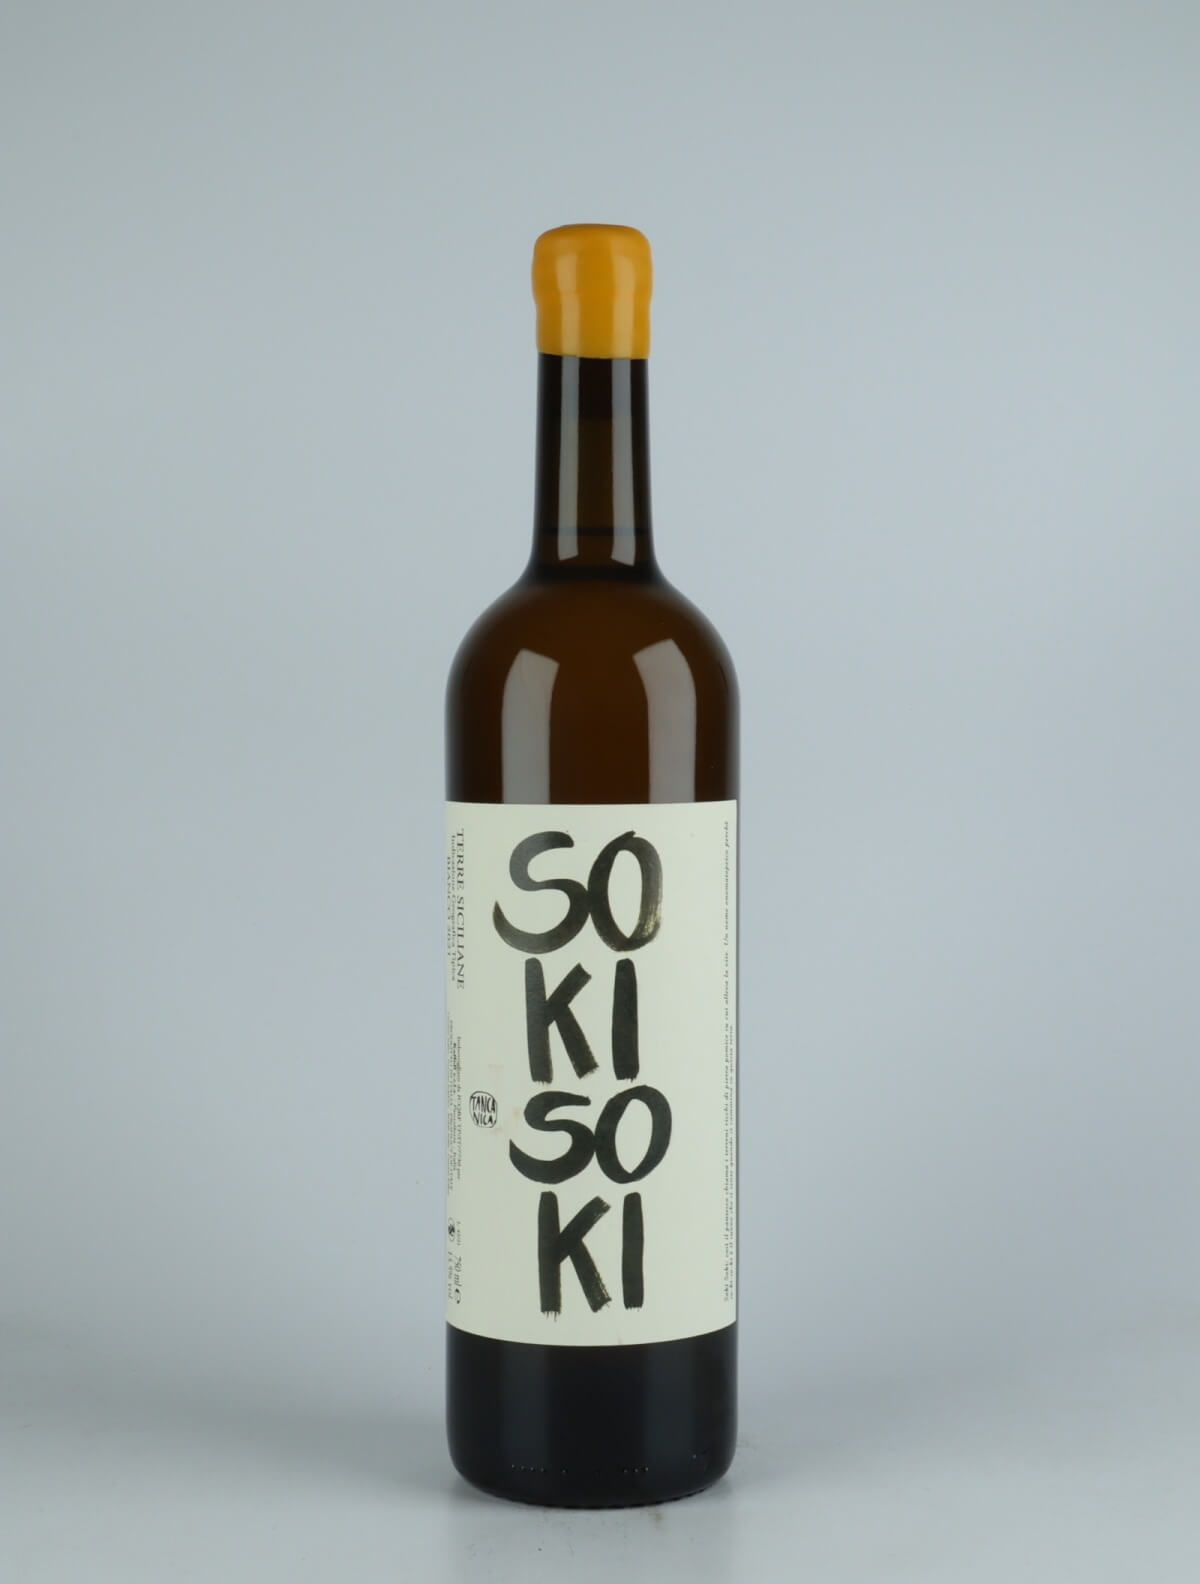 A bottle 2021 Soki Soki Orange wine from Tanca Nica, Sicily in Italy